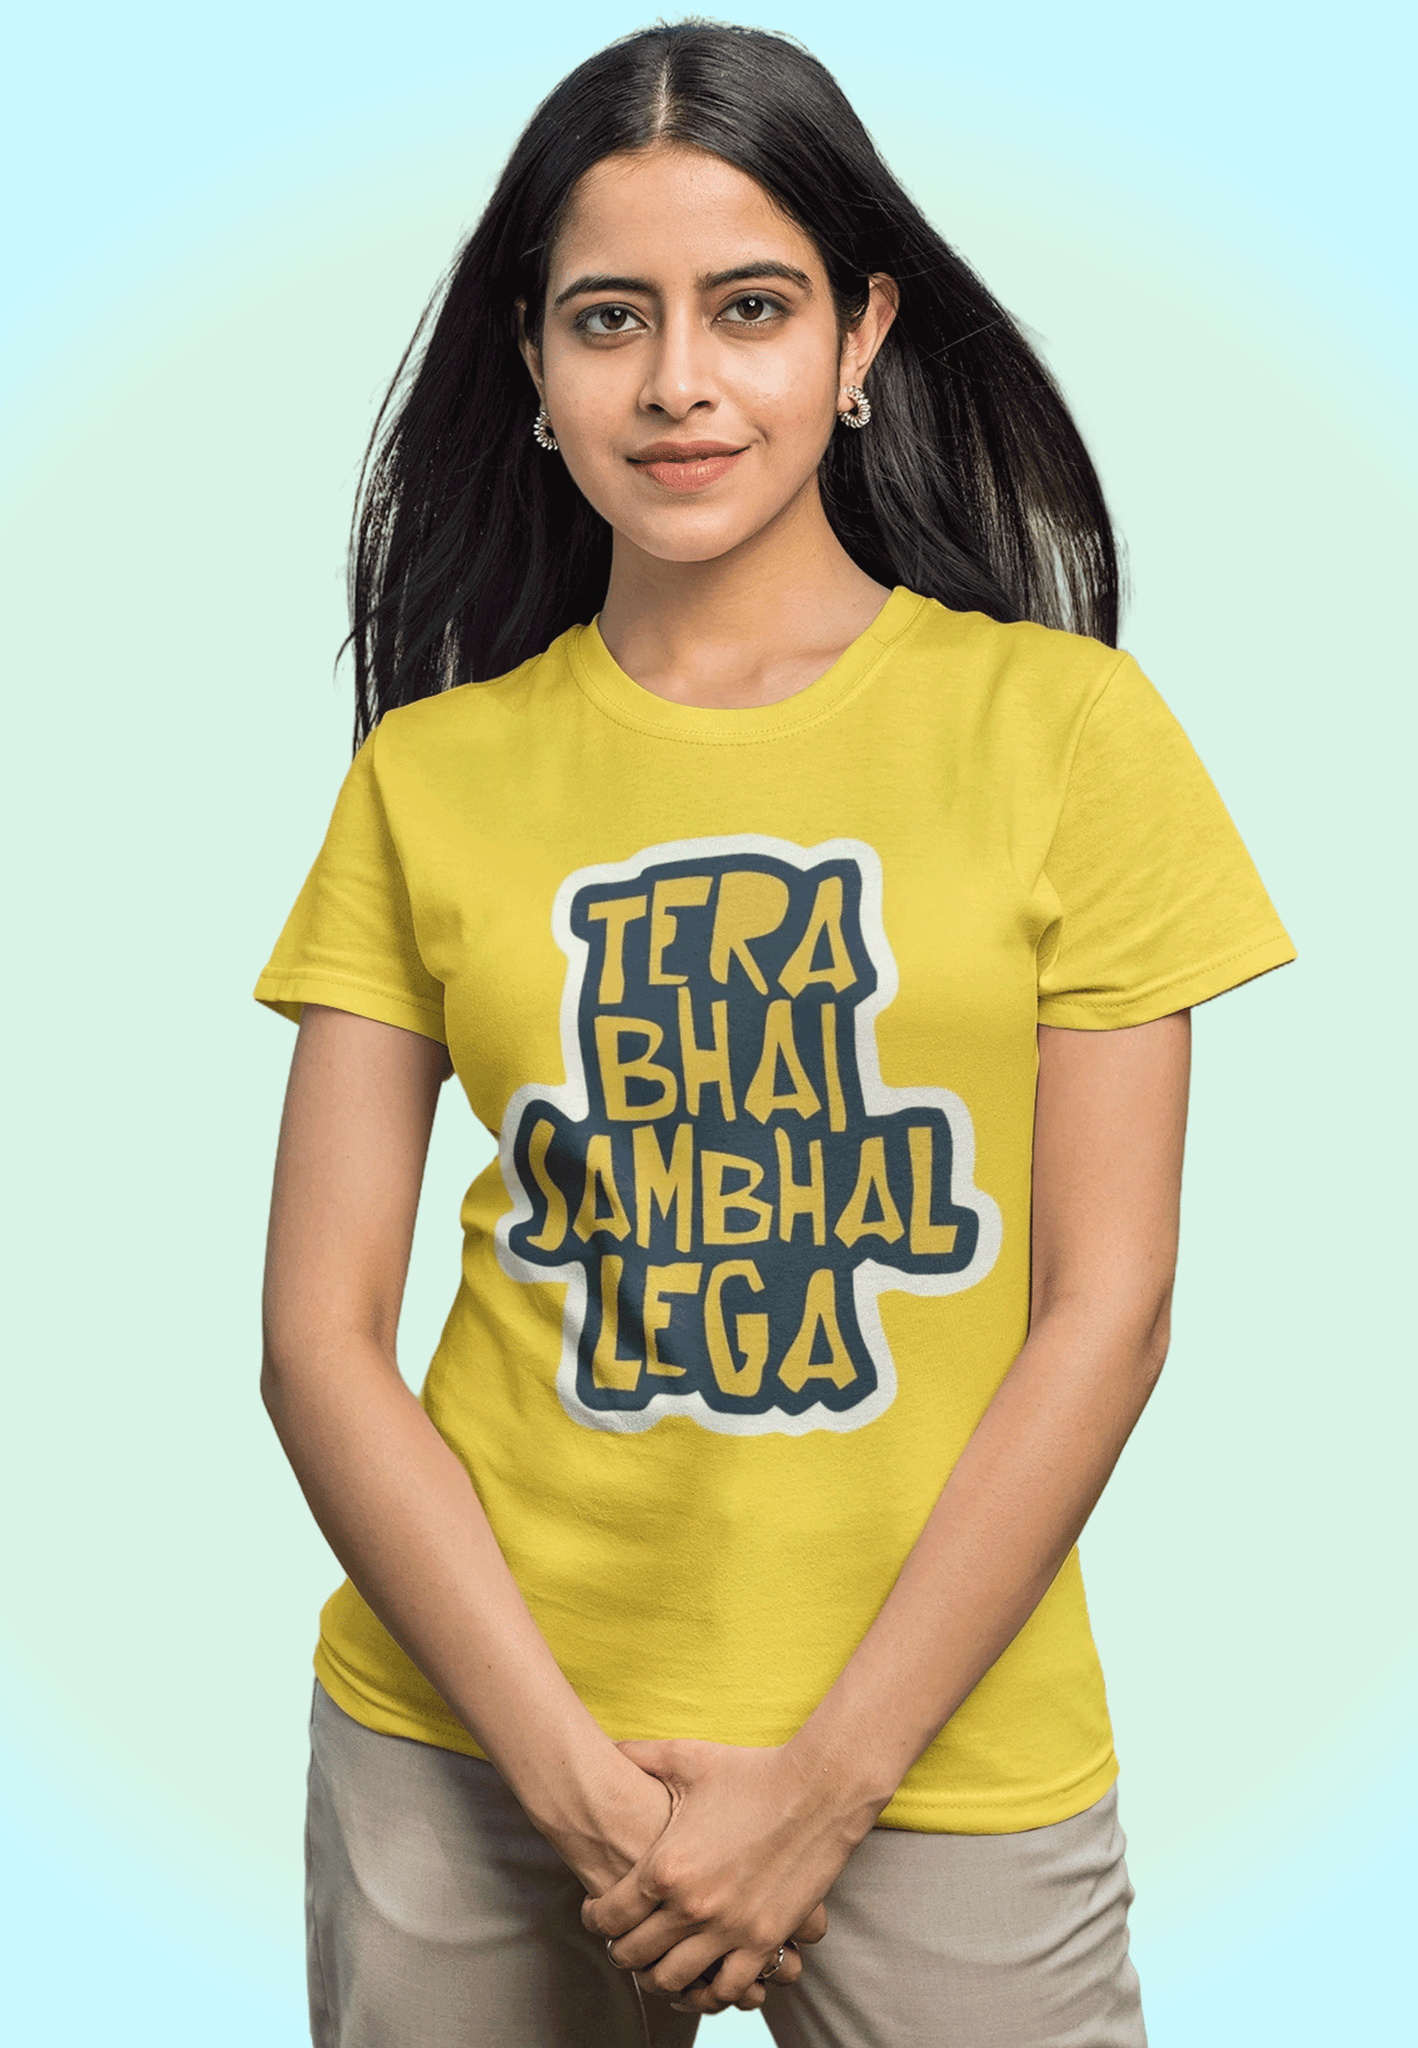 Tera Bhai Sambhal Lega T-shirt Combo